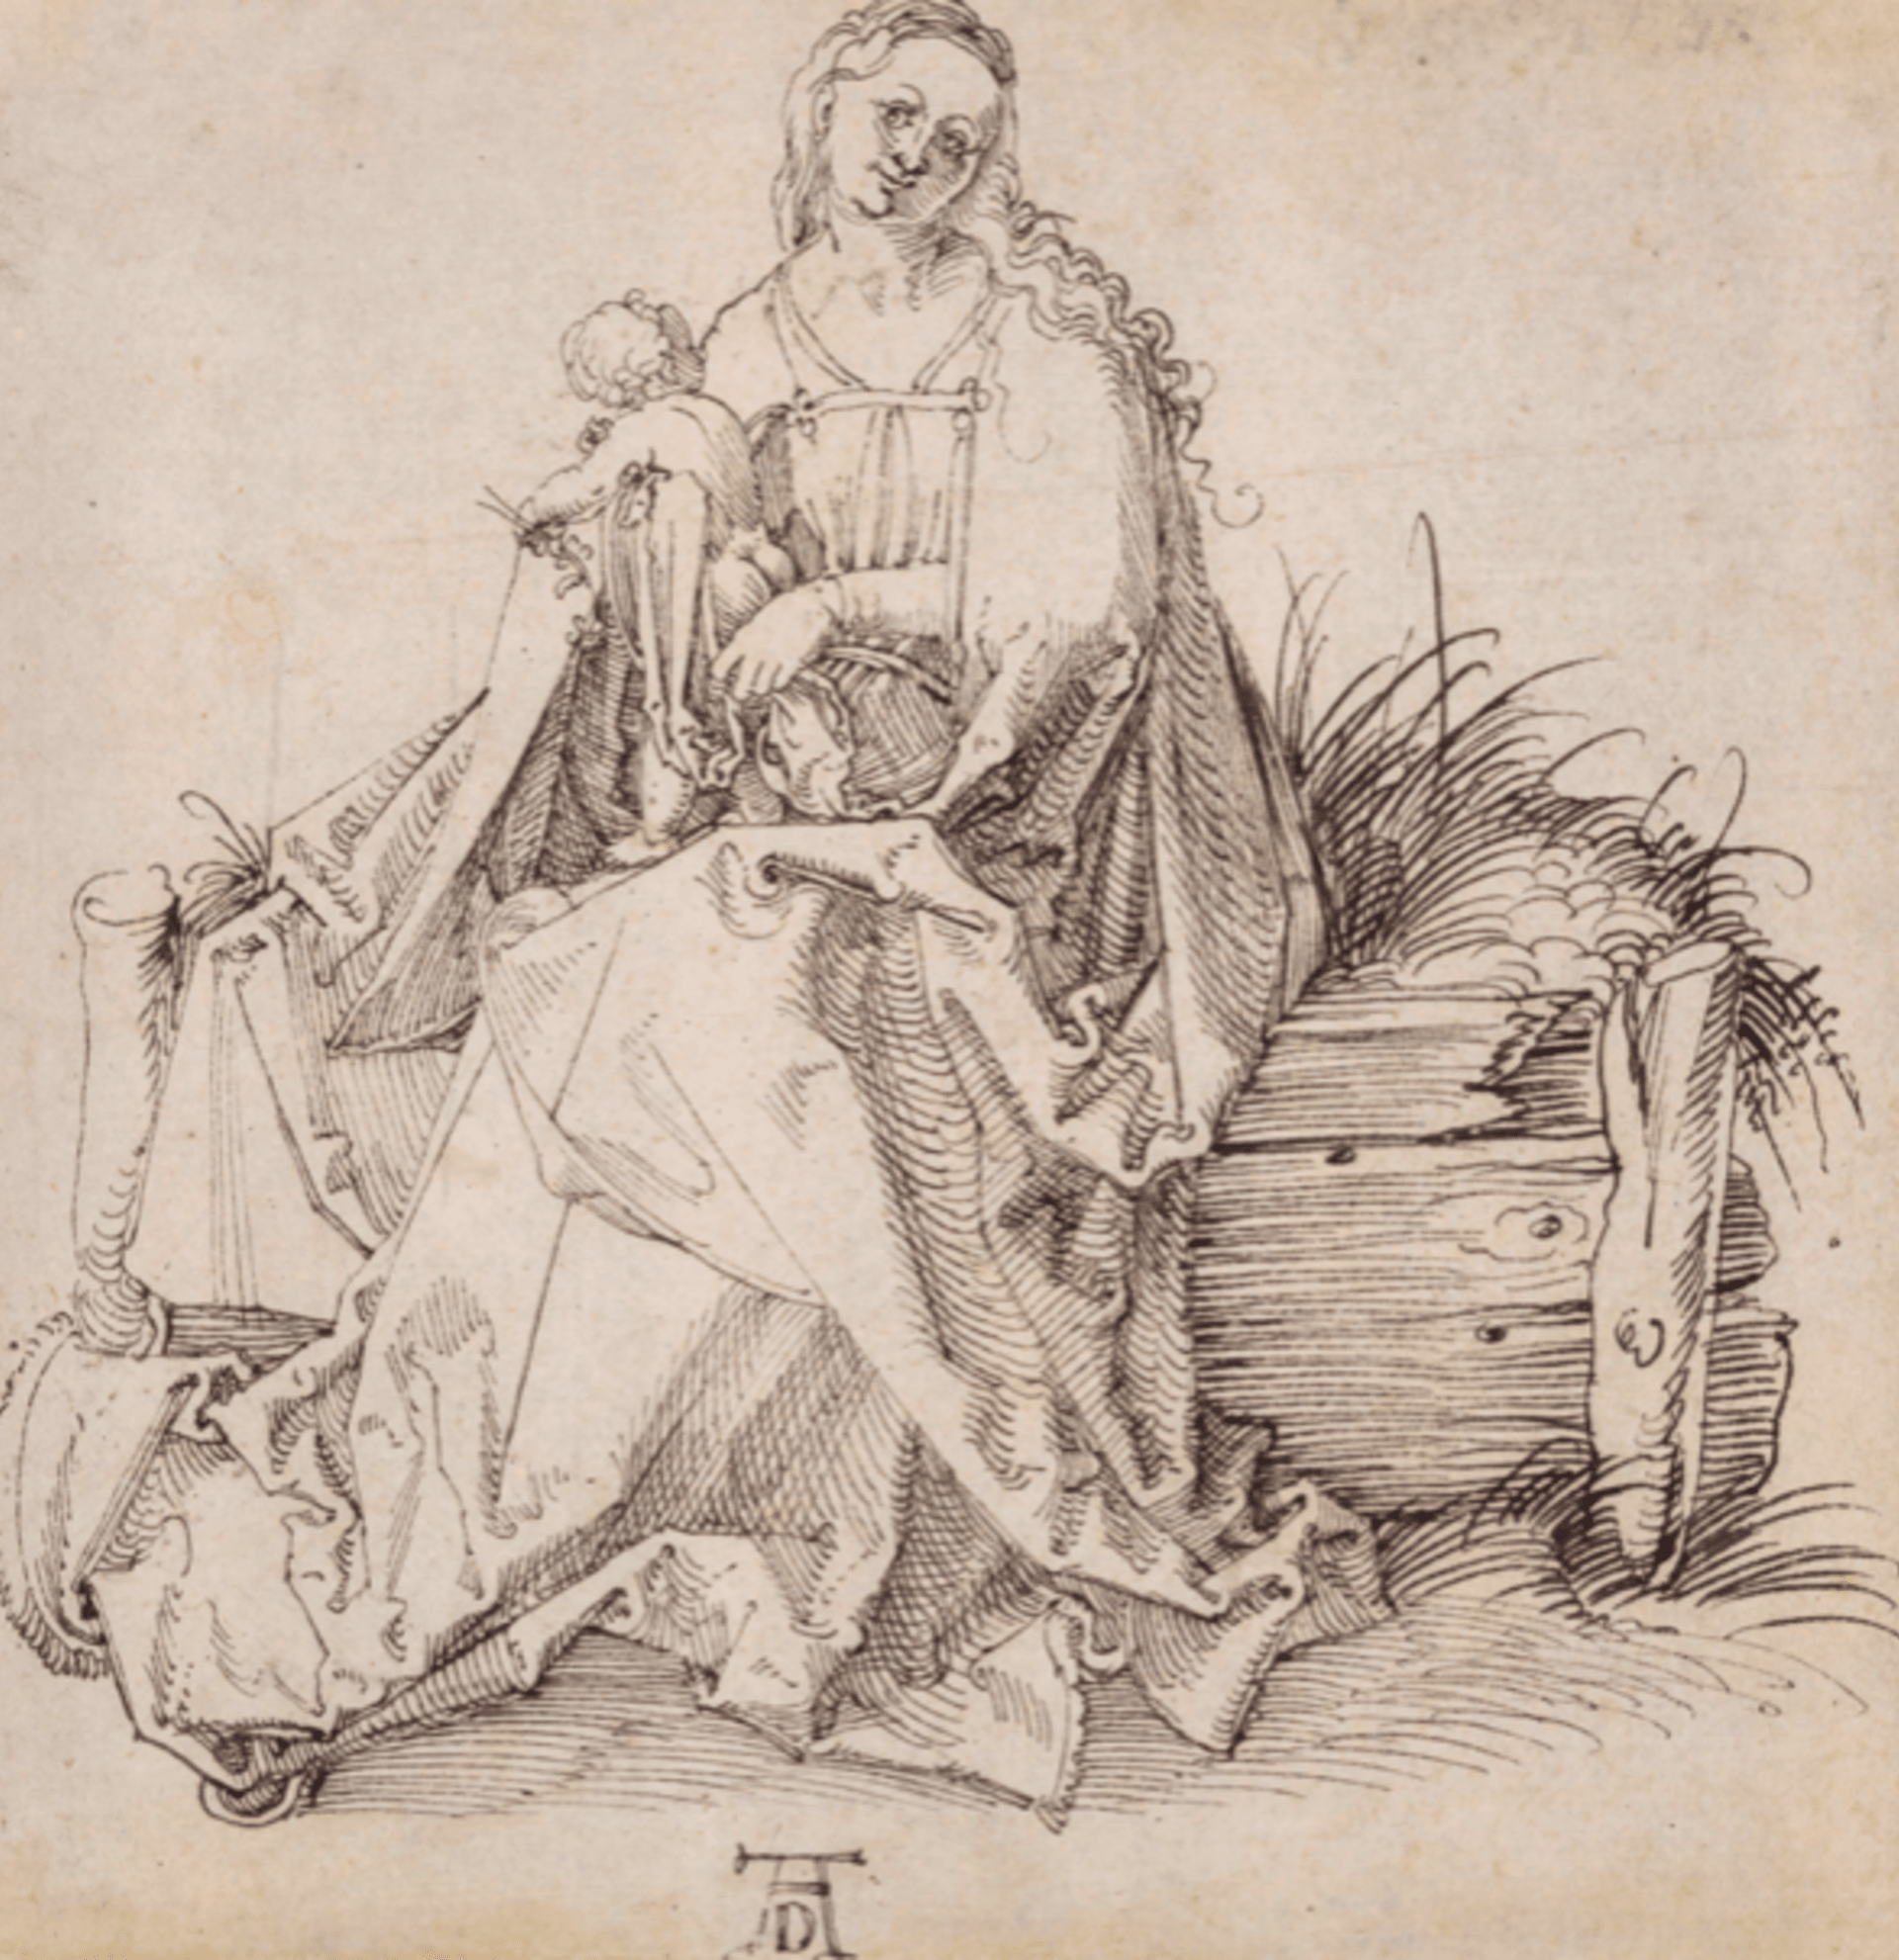 Američan koupil ve výprodeji kresbu za pár dolarů, jde o originál od Dürera. 